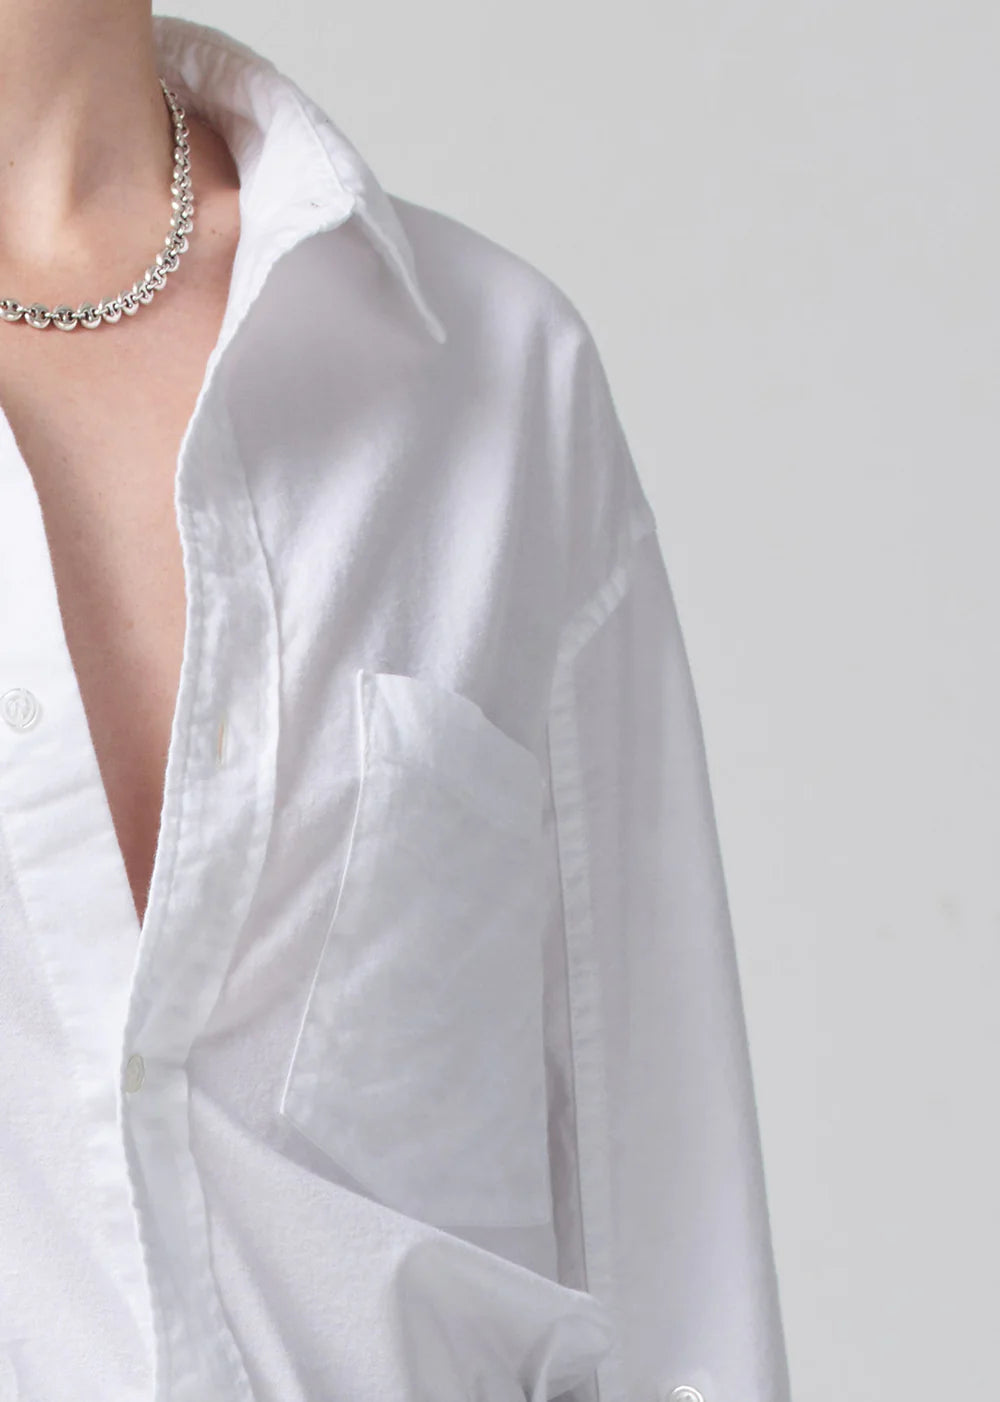 Oxford White Kayla Shirt